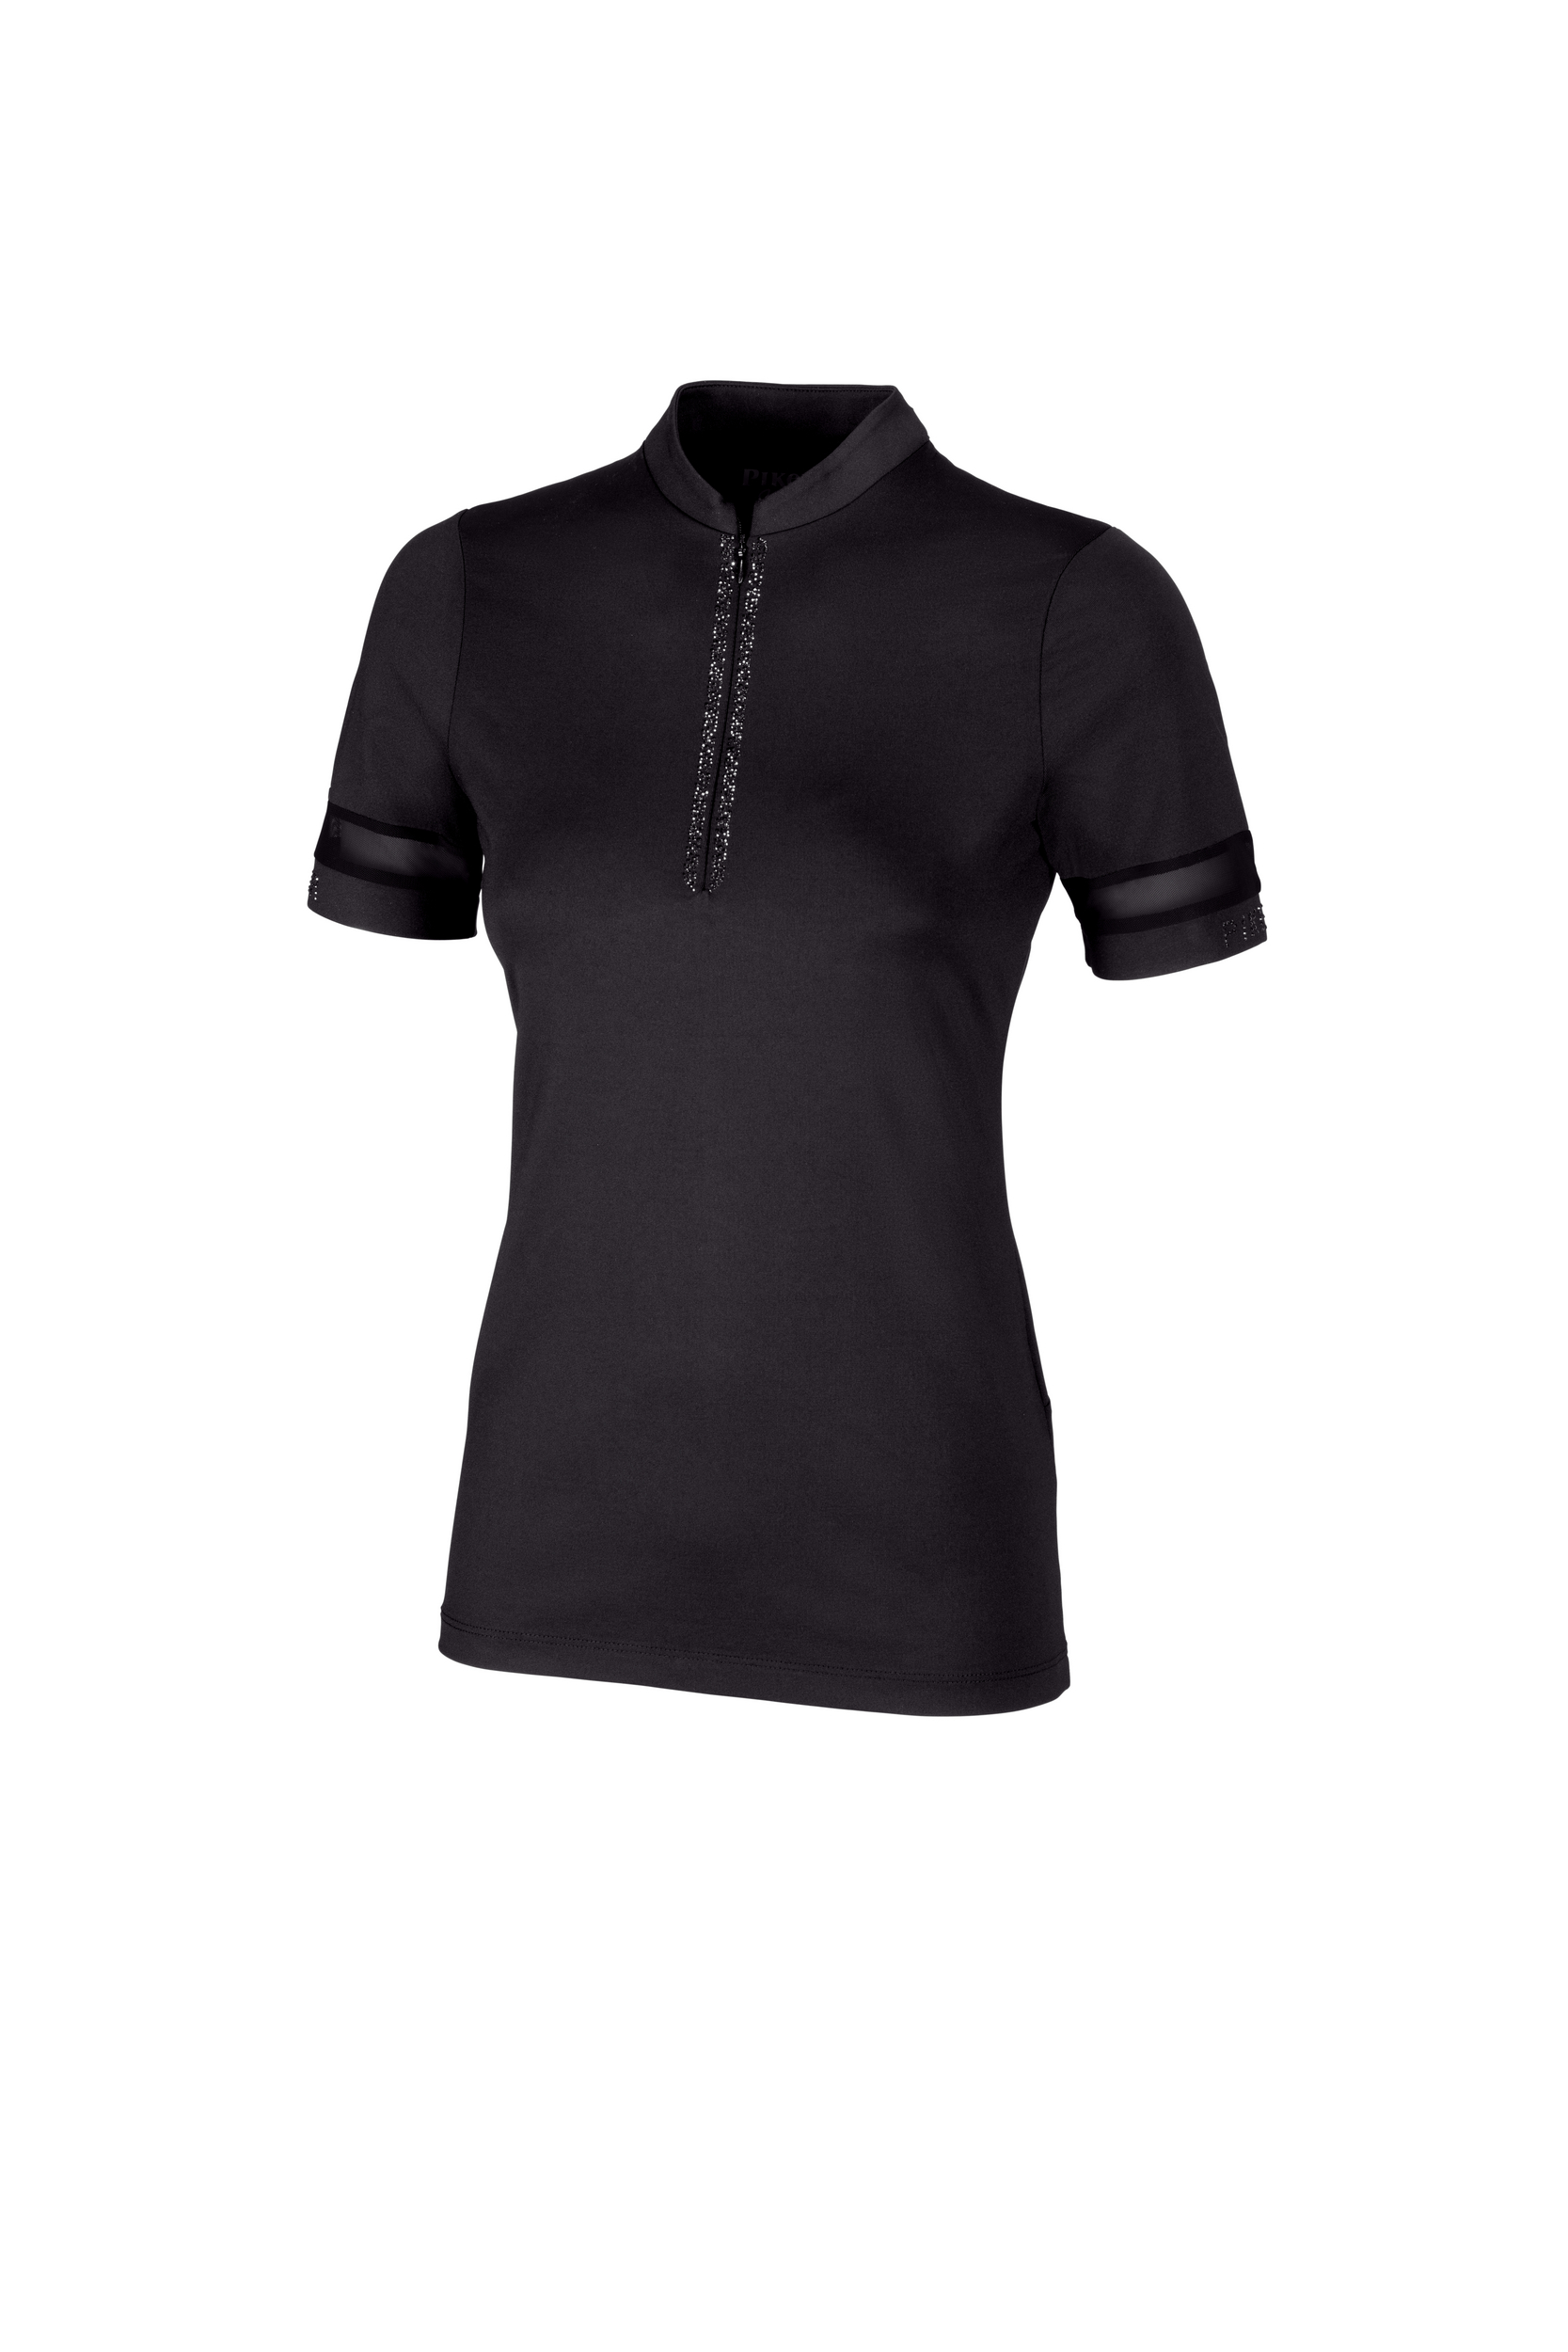 PIKEUR Damen Zip Shirt Kurzarm 5210 Selection 24 - black - 34 - 3